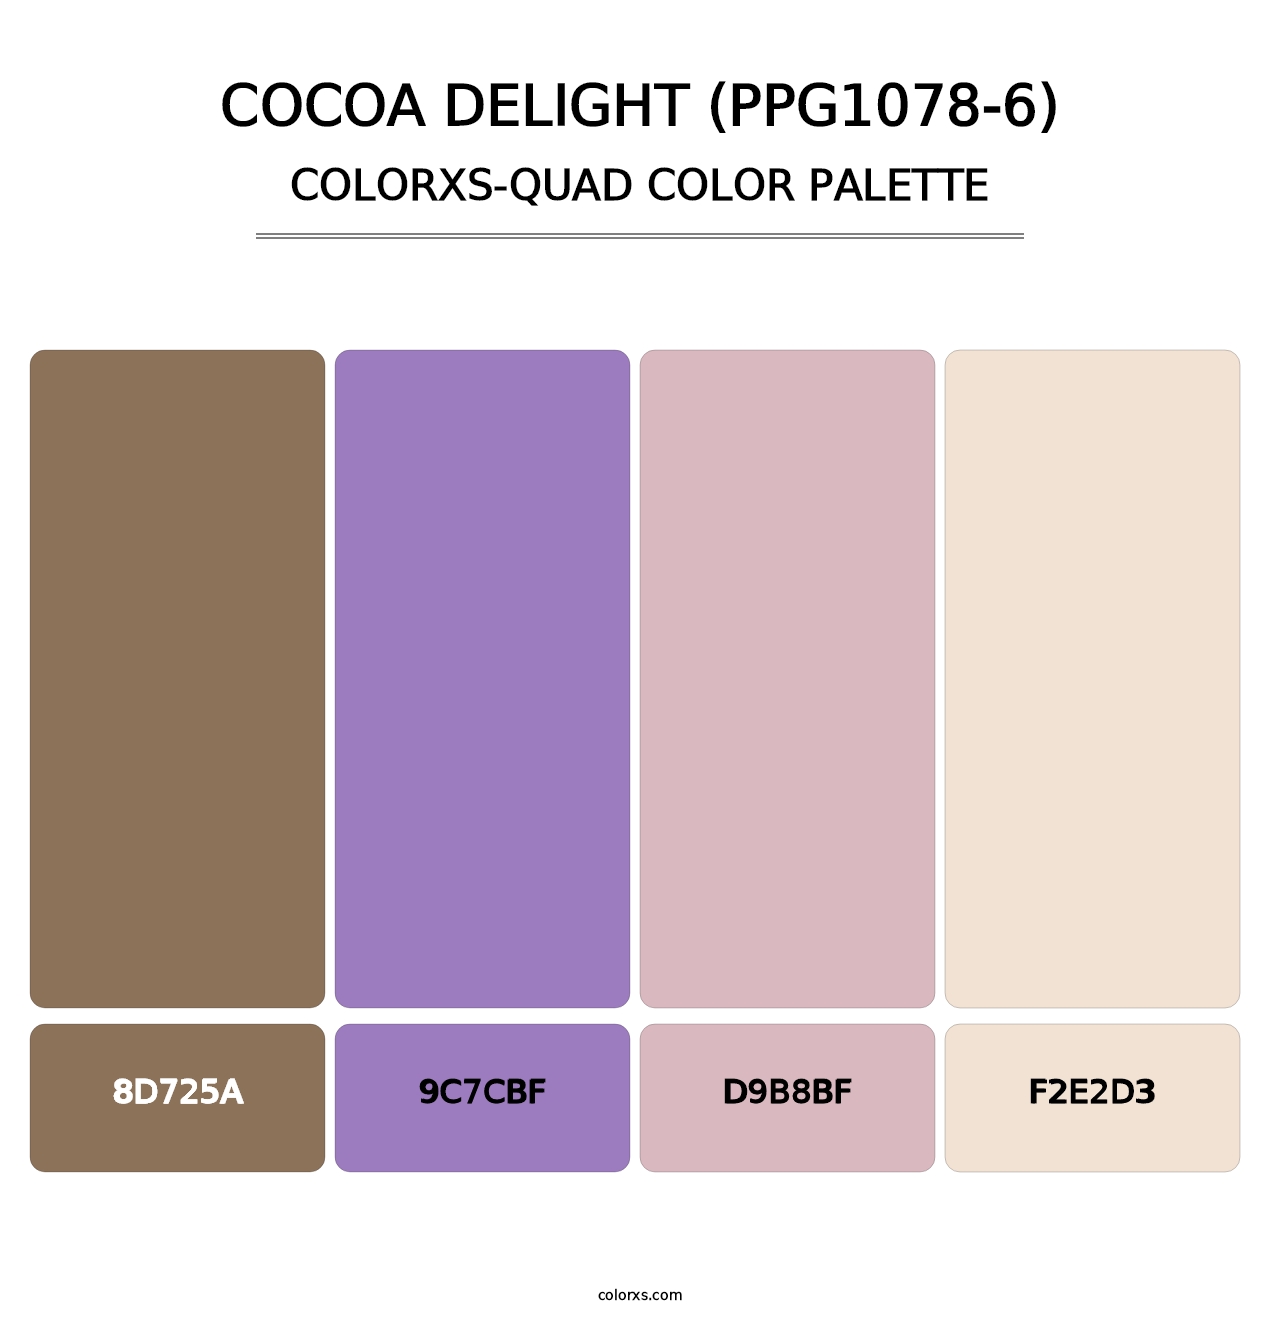 Cocoa Delight (PPG1078-6) - Colorxs Quad Palette